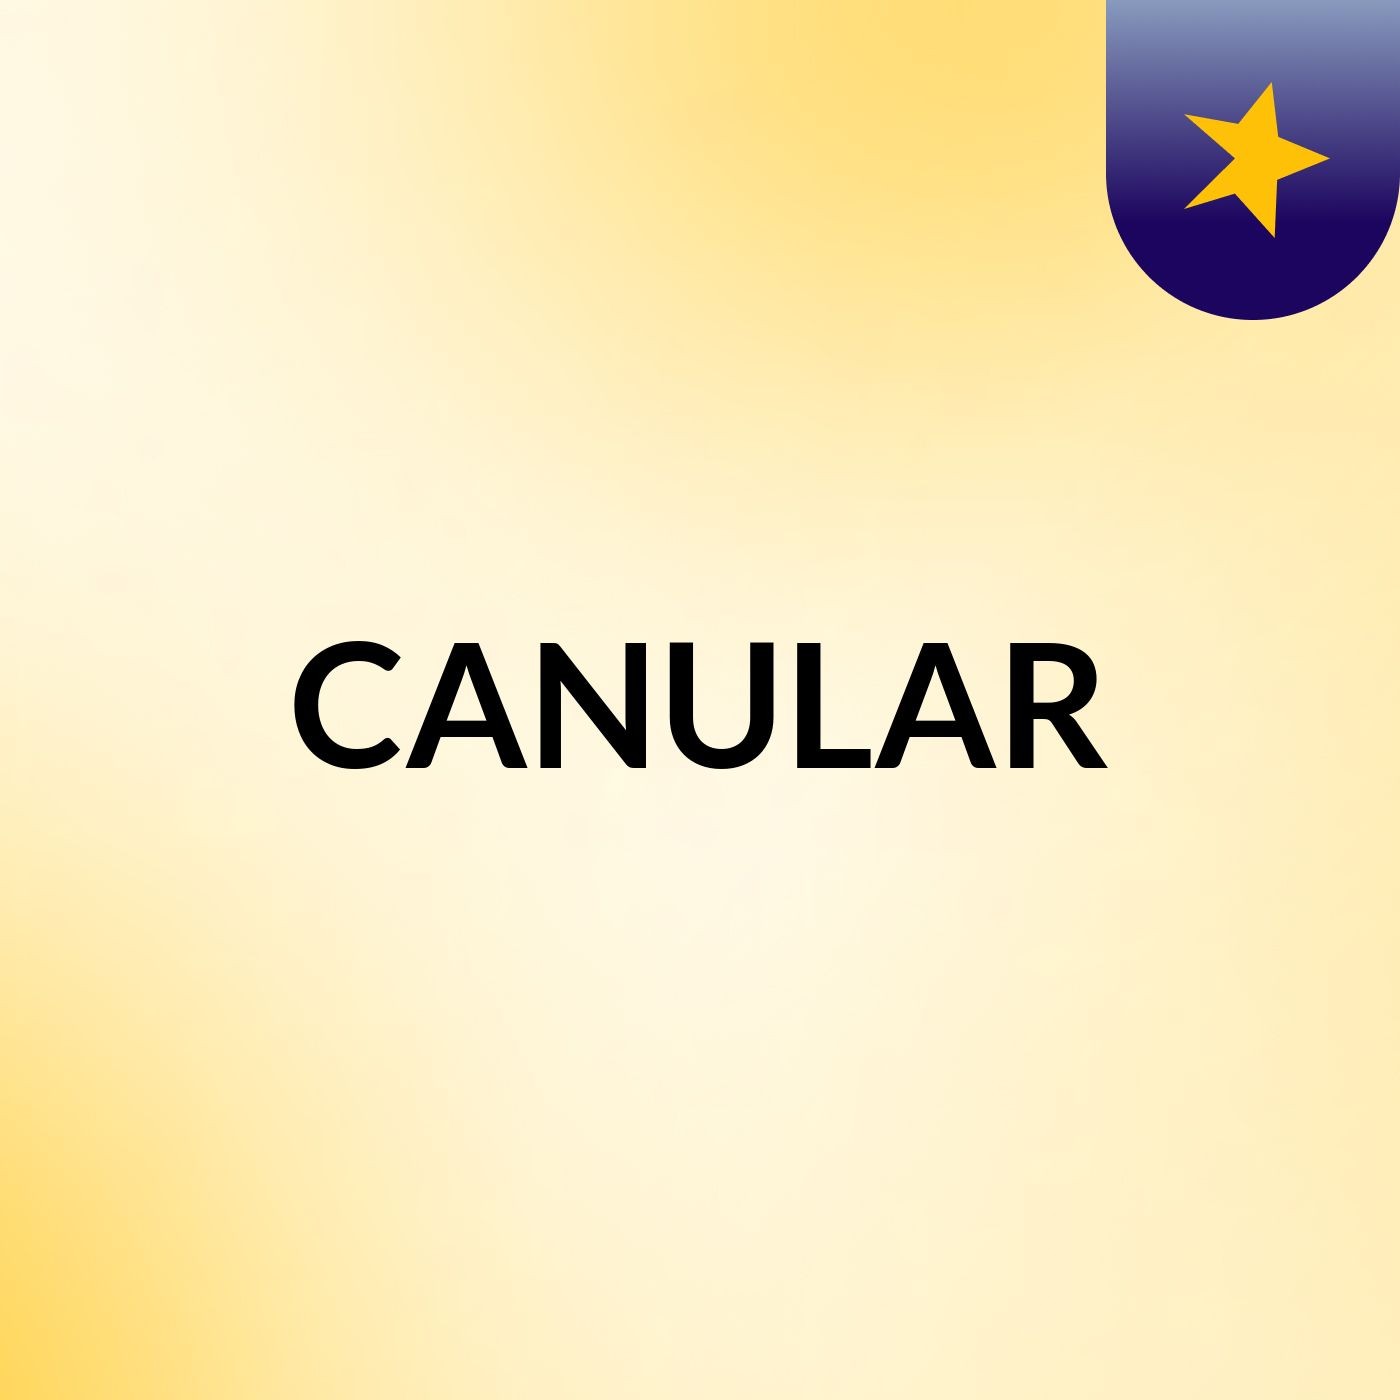 CANULAR